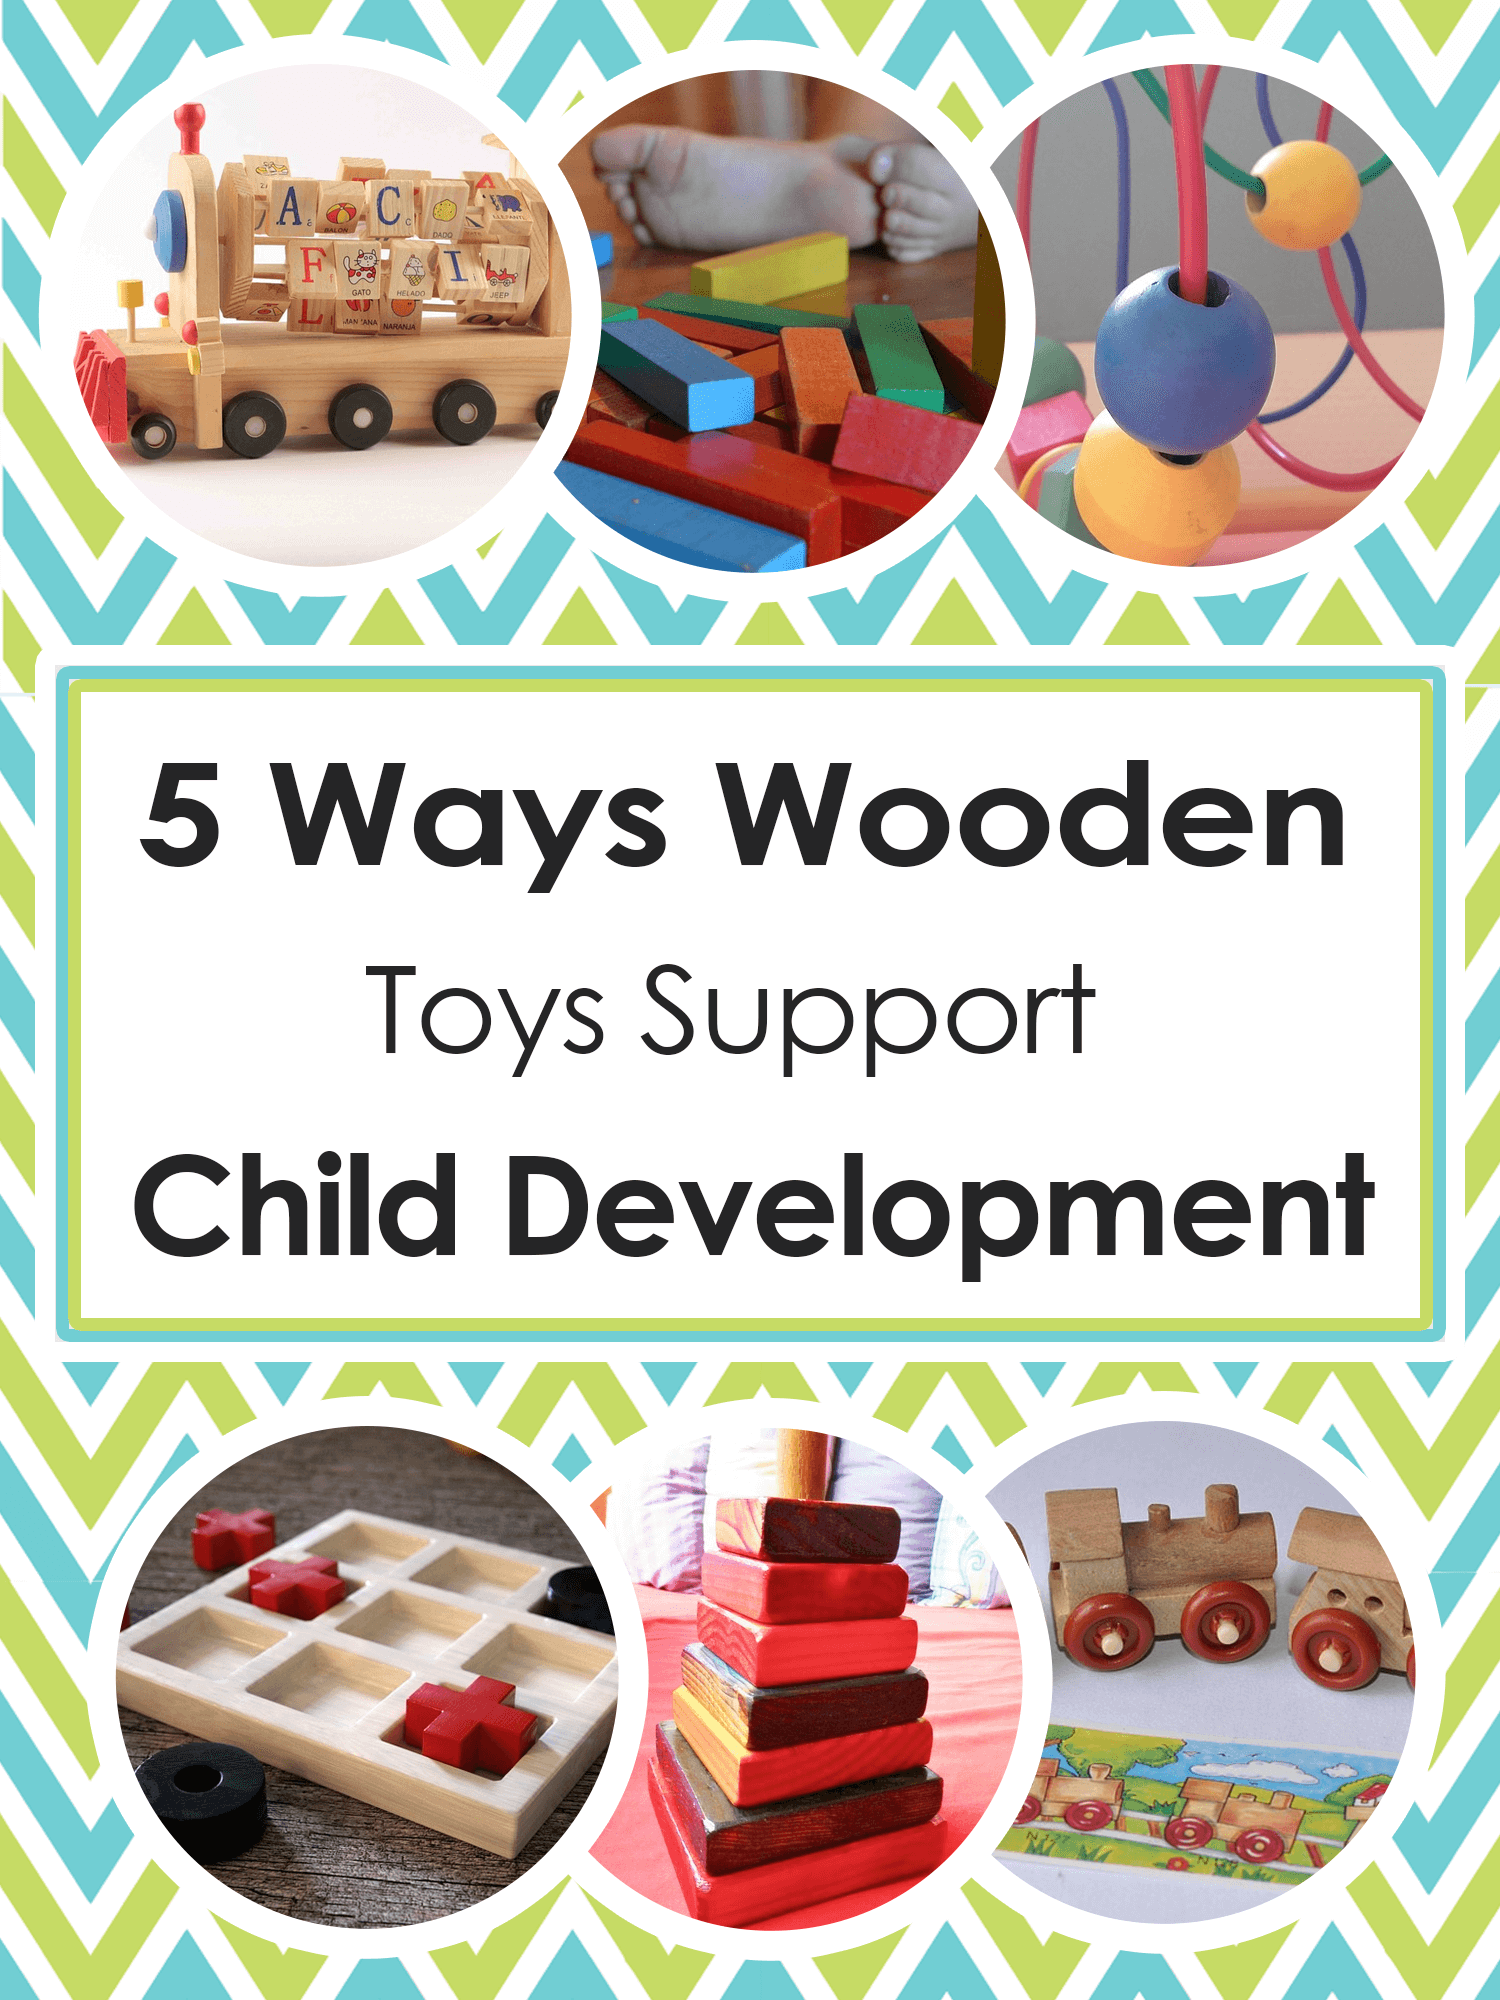 5 Ways Wooden Toys Support Child Development _ imagine forest